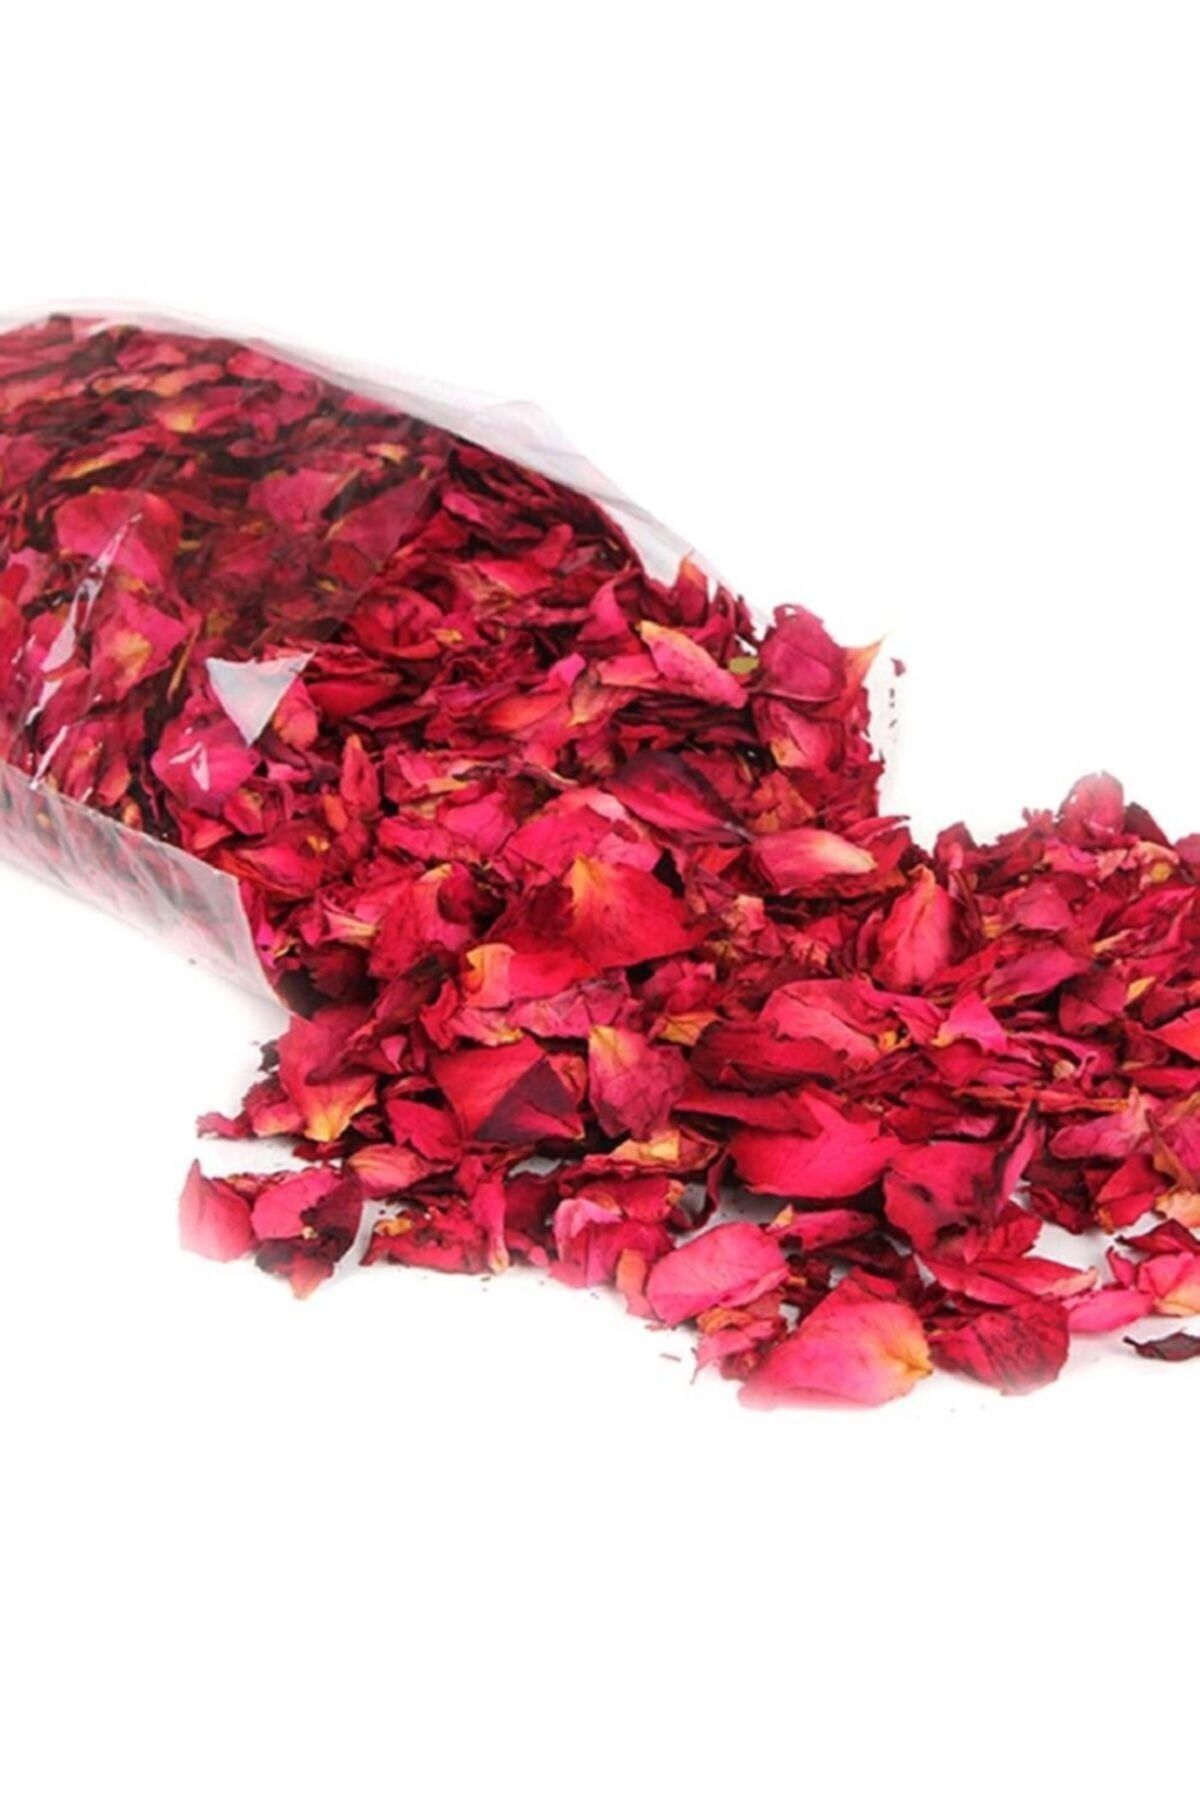 HediyeFilesi 1000 Adet Kuru Gül Yaprağı, Romantik Süsleme Gül Yaprakları 2 Paket